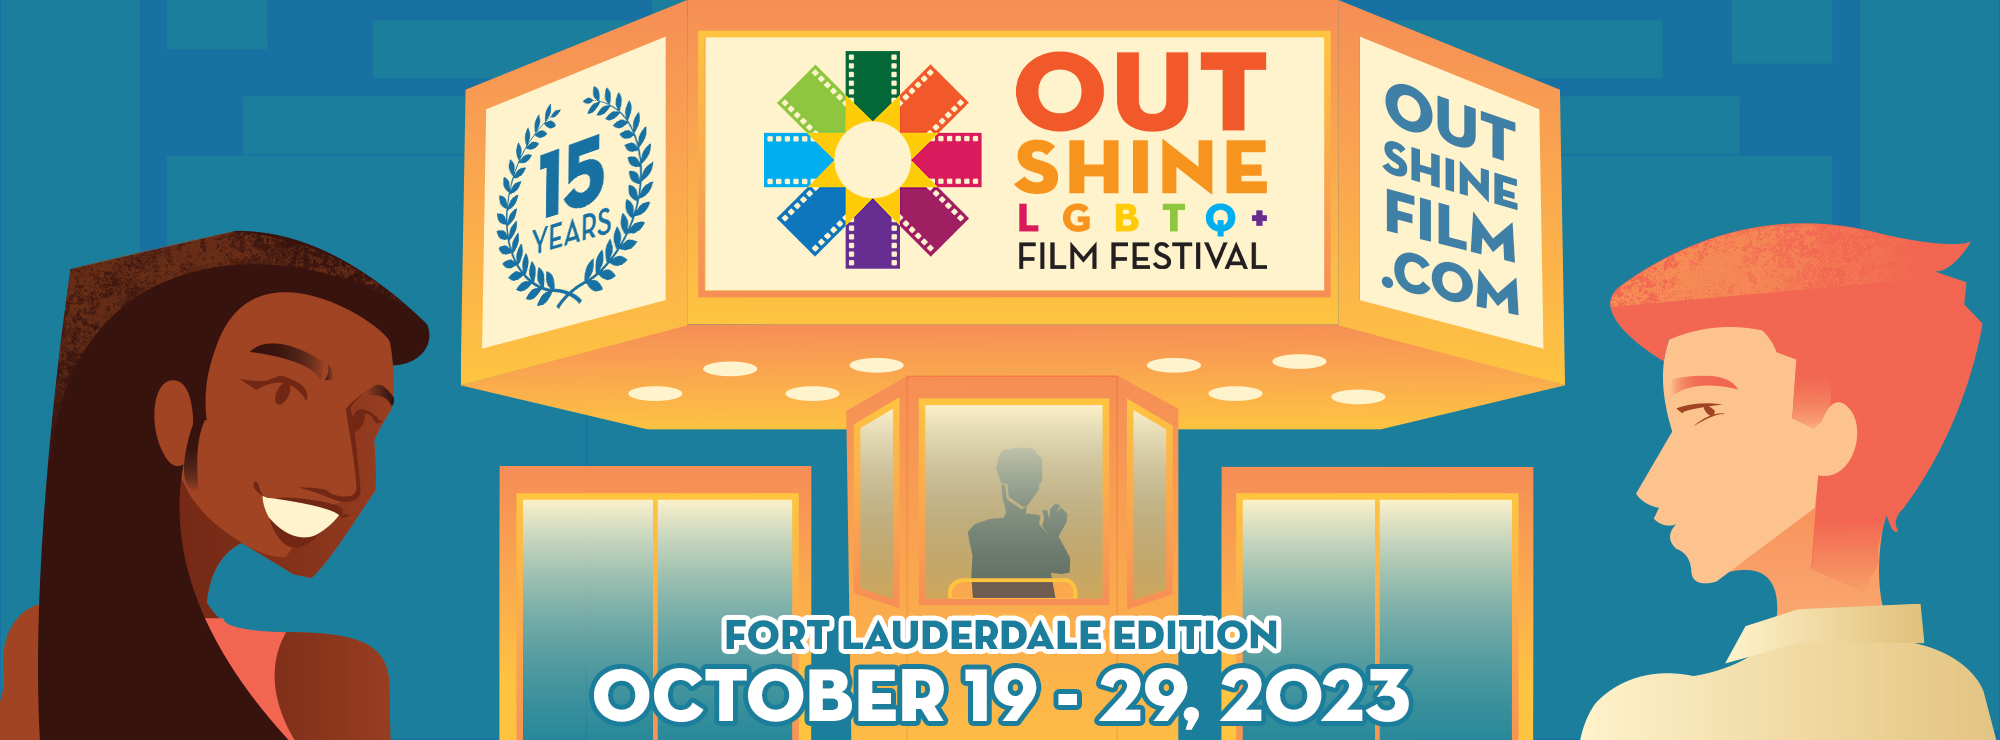 OUTshine LGBTQ+ Film Festival